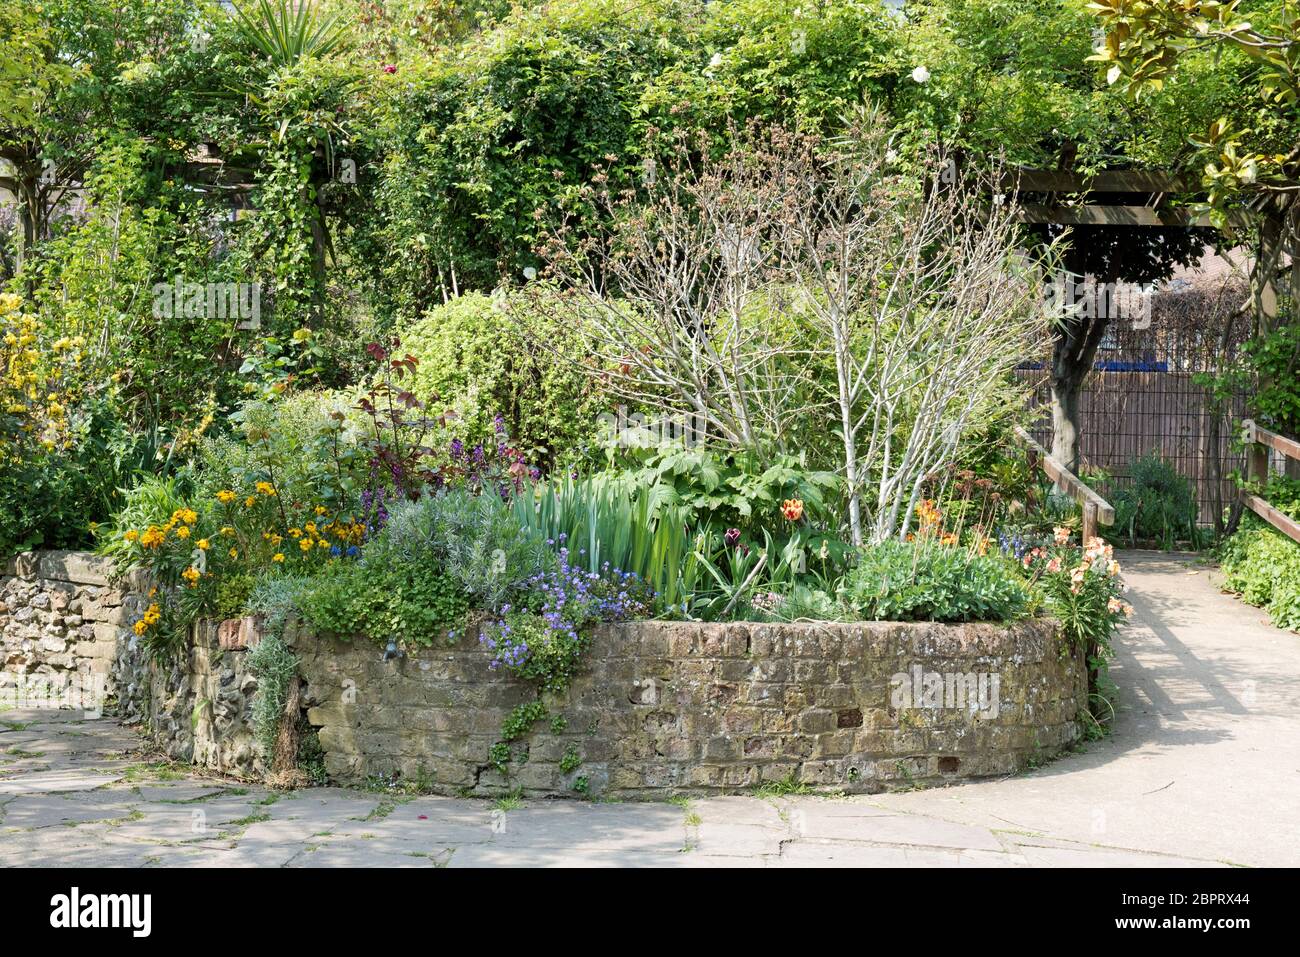 Hochbeet mit gebogenem Ziegelsteinfassungen, Culpeper Community Garden, ein urbaner Freiraum im Londoner Borough of Islington, England, Großbritannien Stockfoto